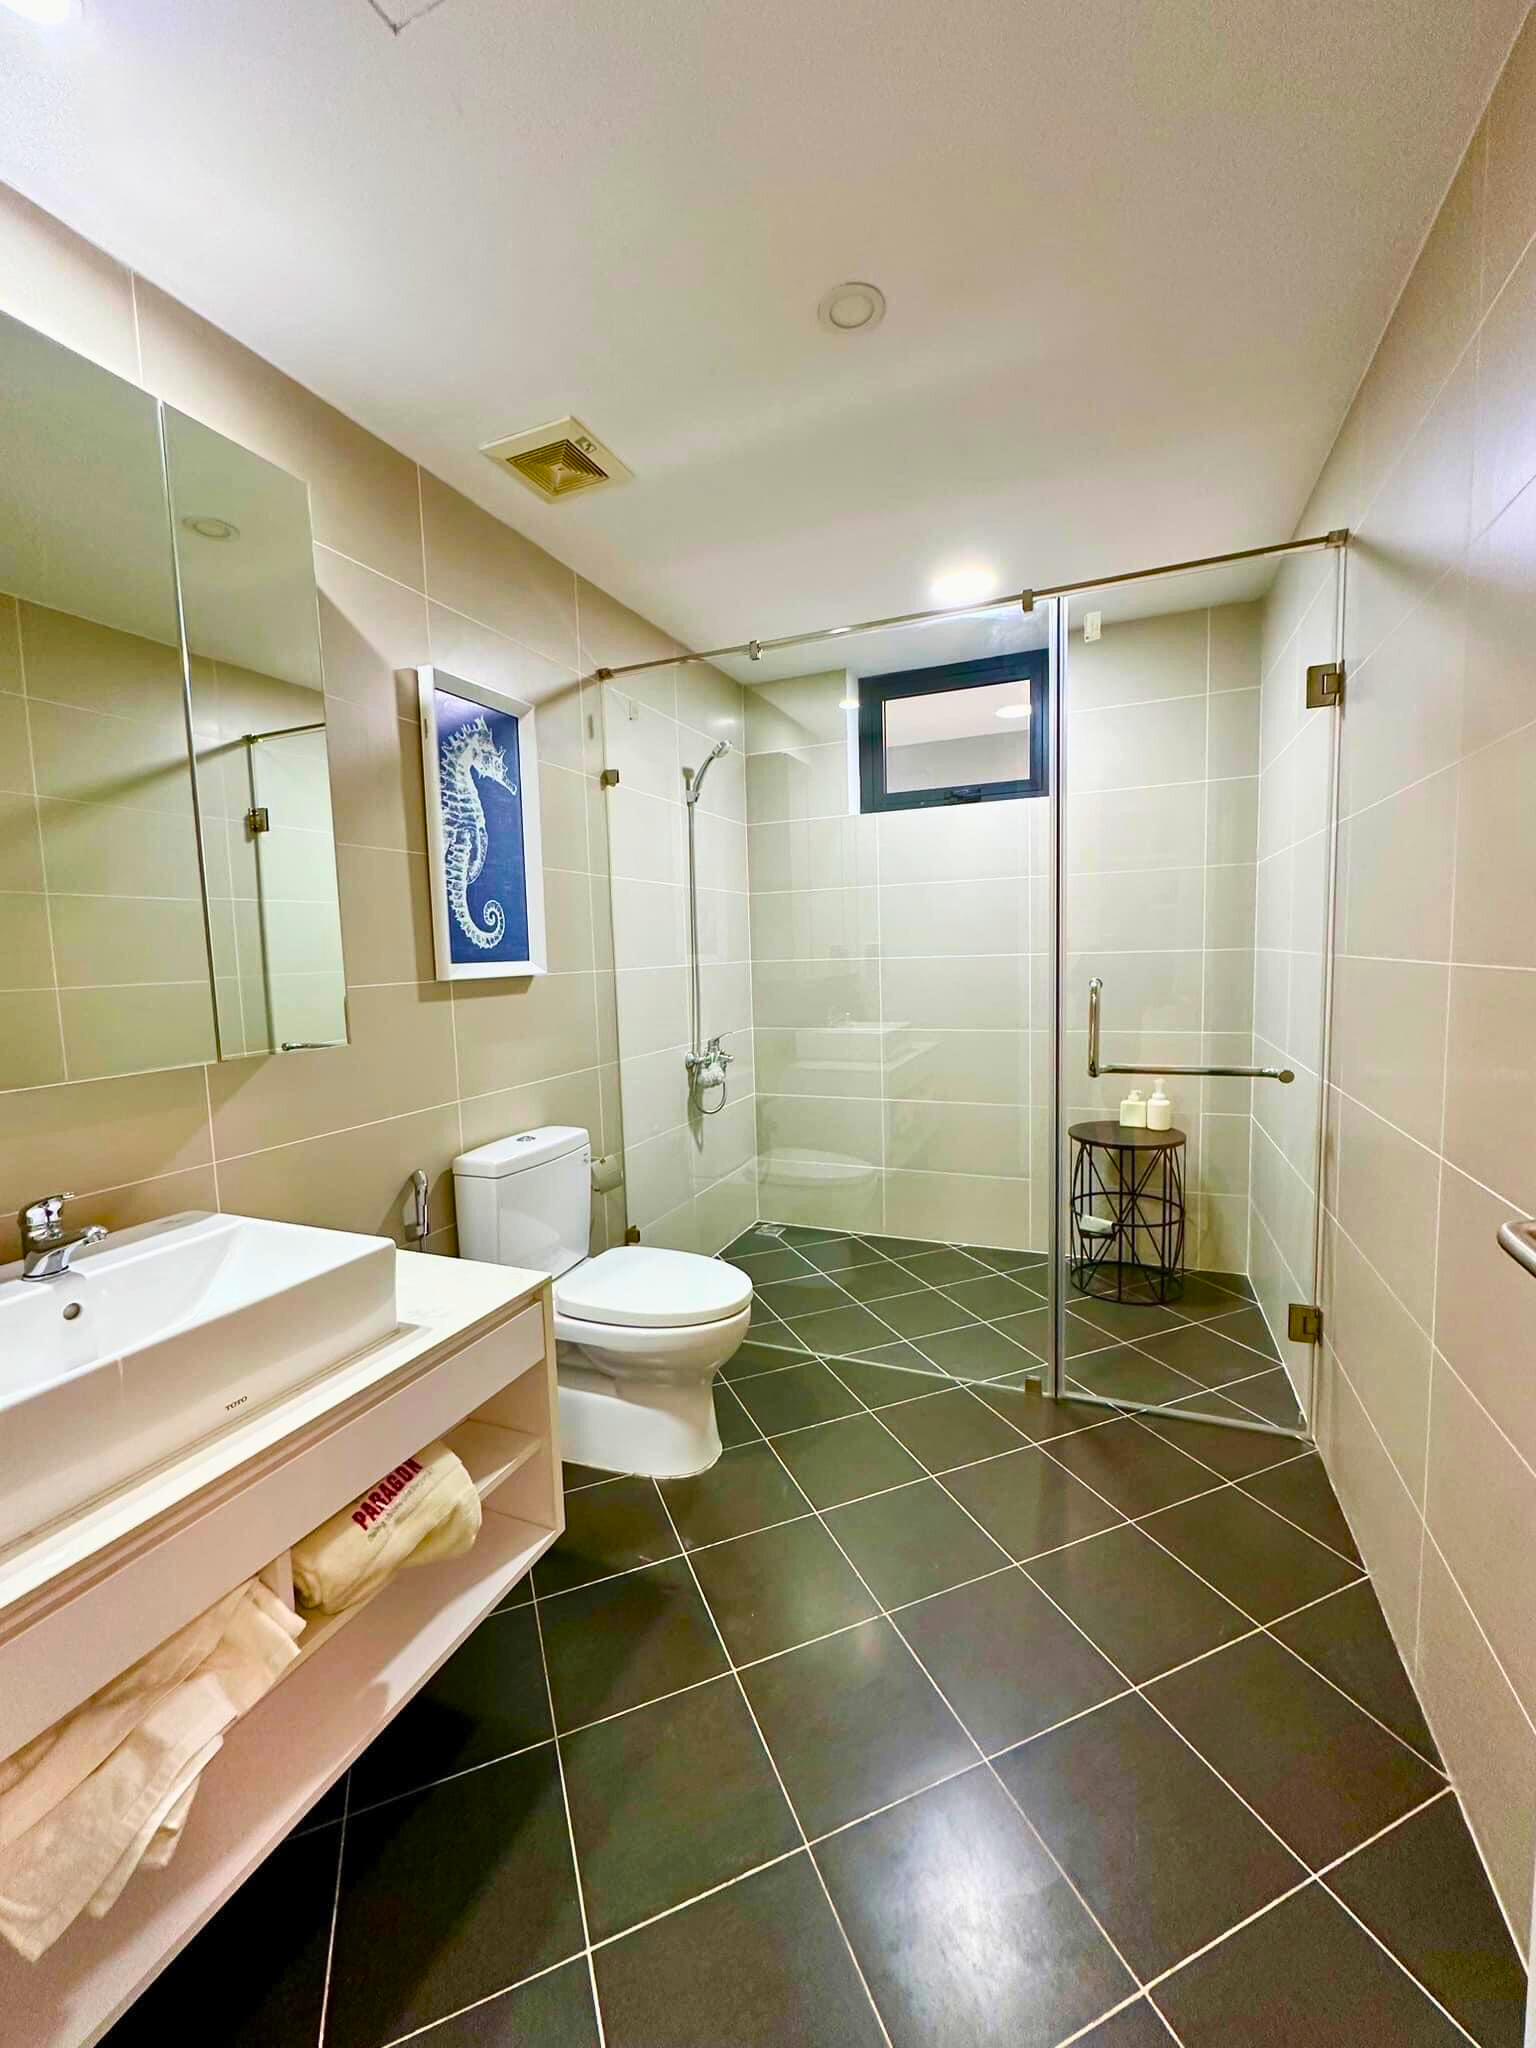 Nhà vệ sinh thoáng rộng sạch sẽ tại Hanoi Paragon